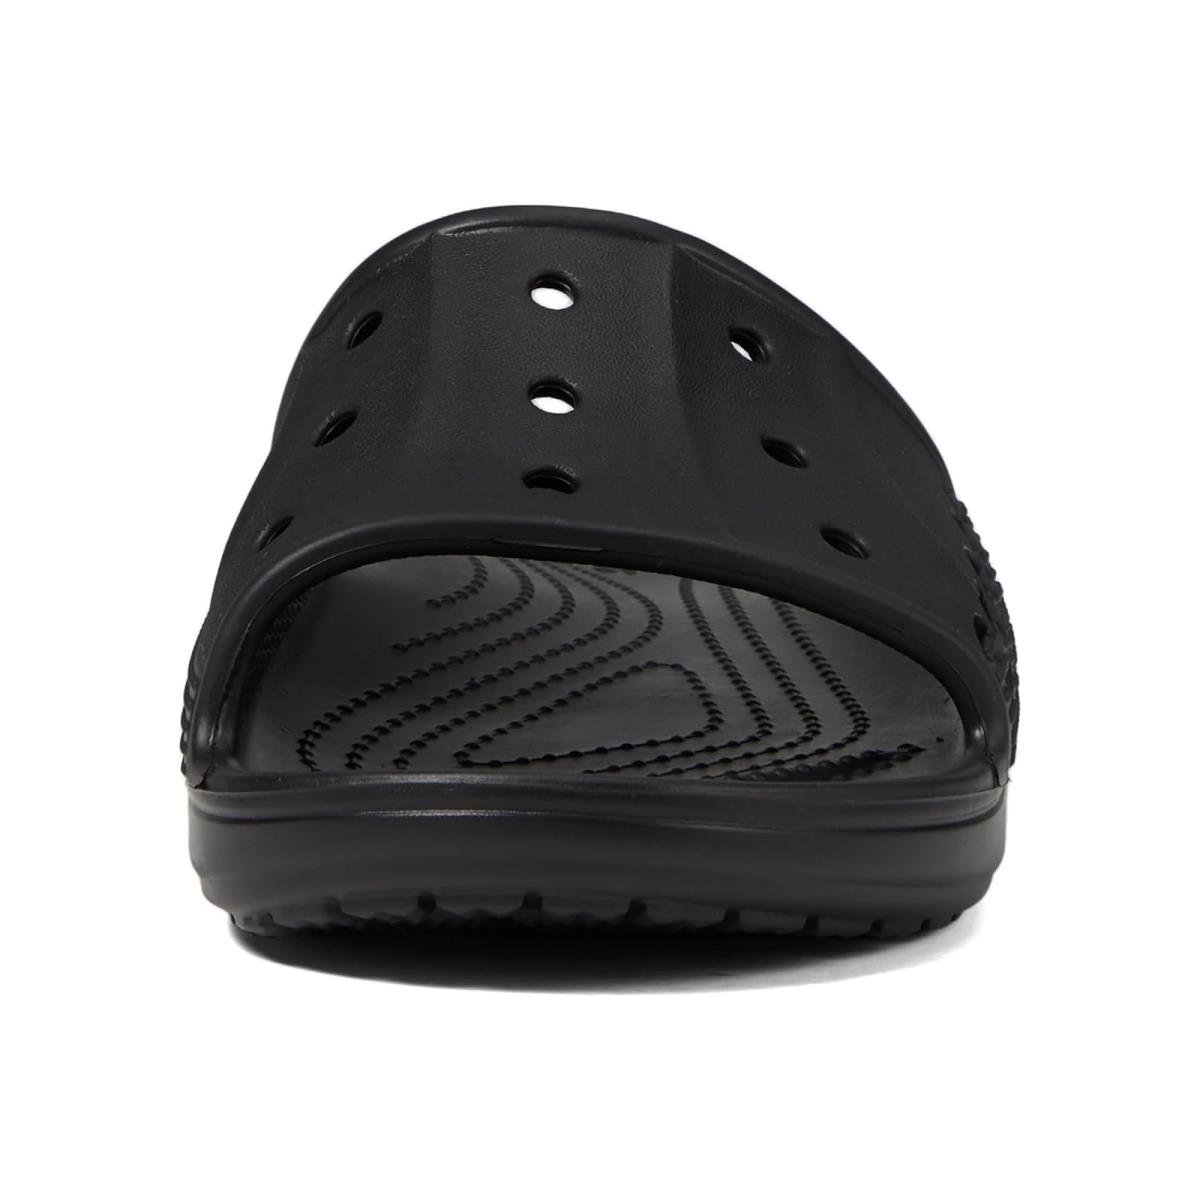 Unisex Sandals Crocs Via Slides Sandals